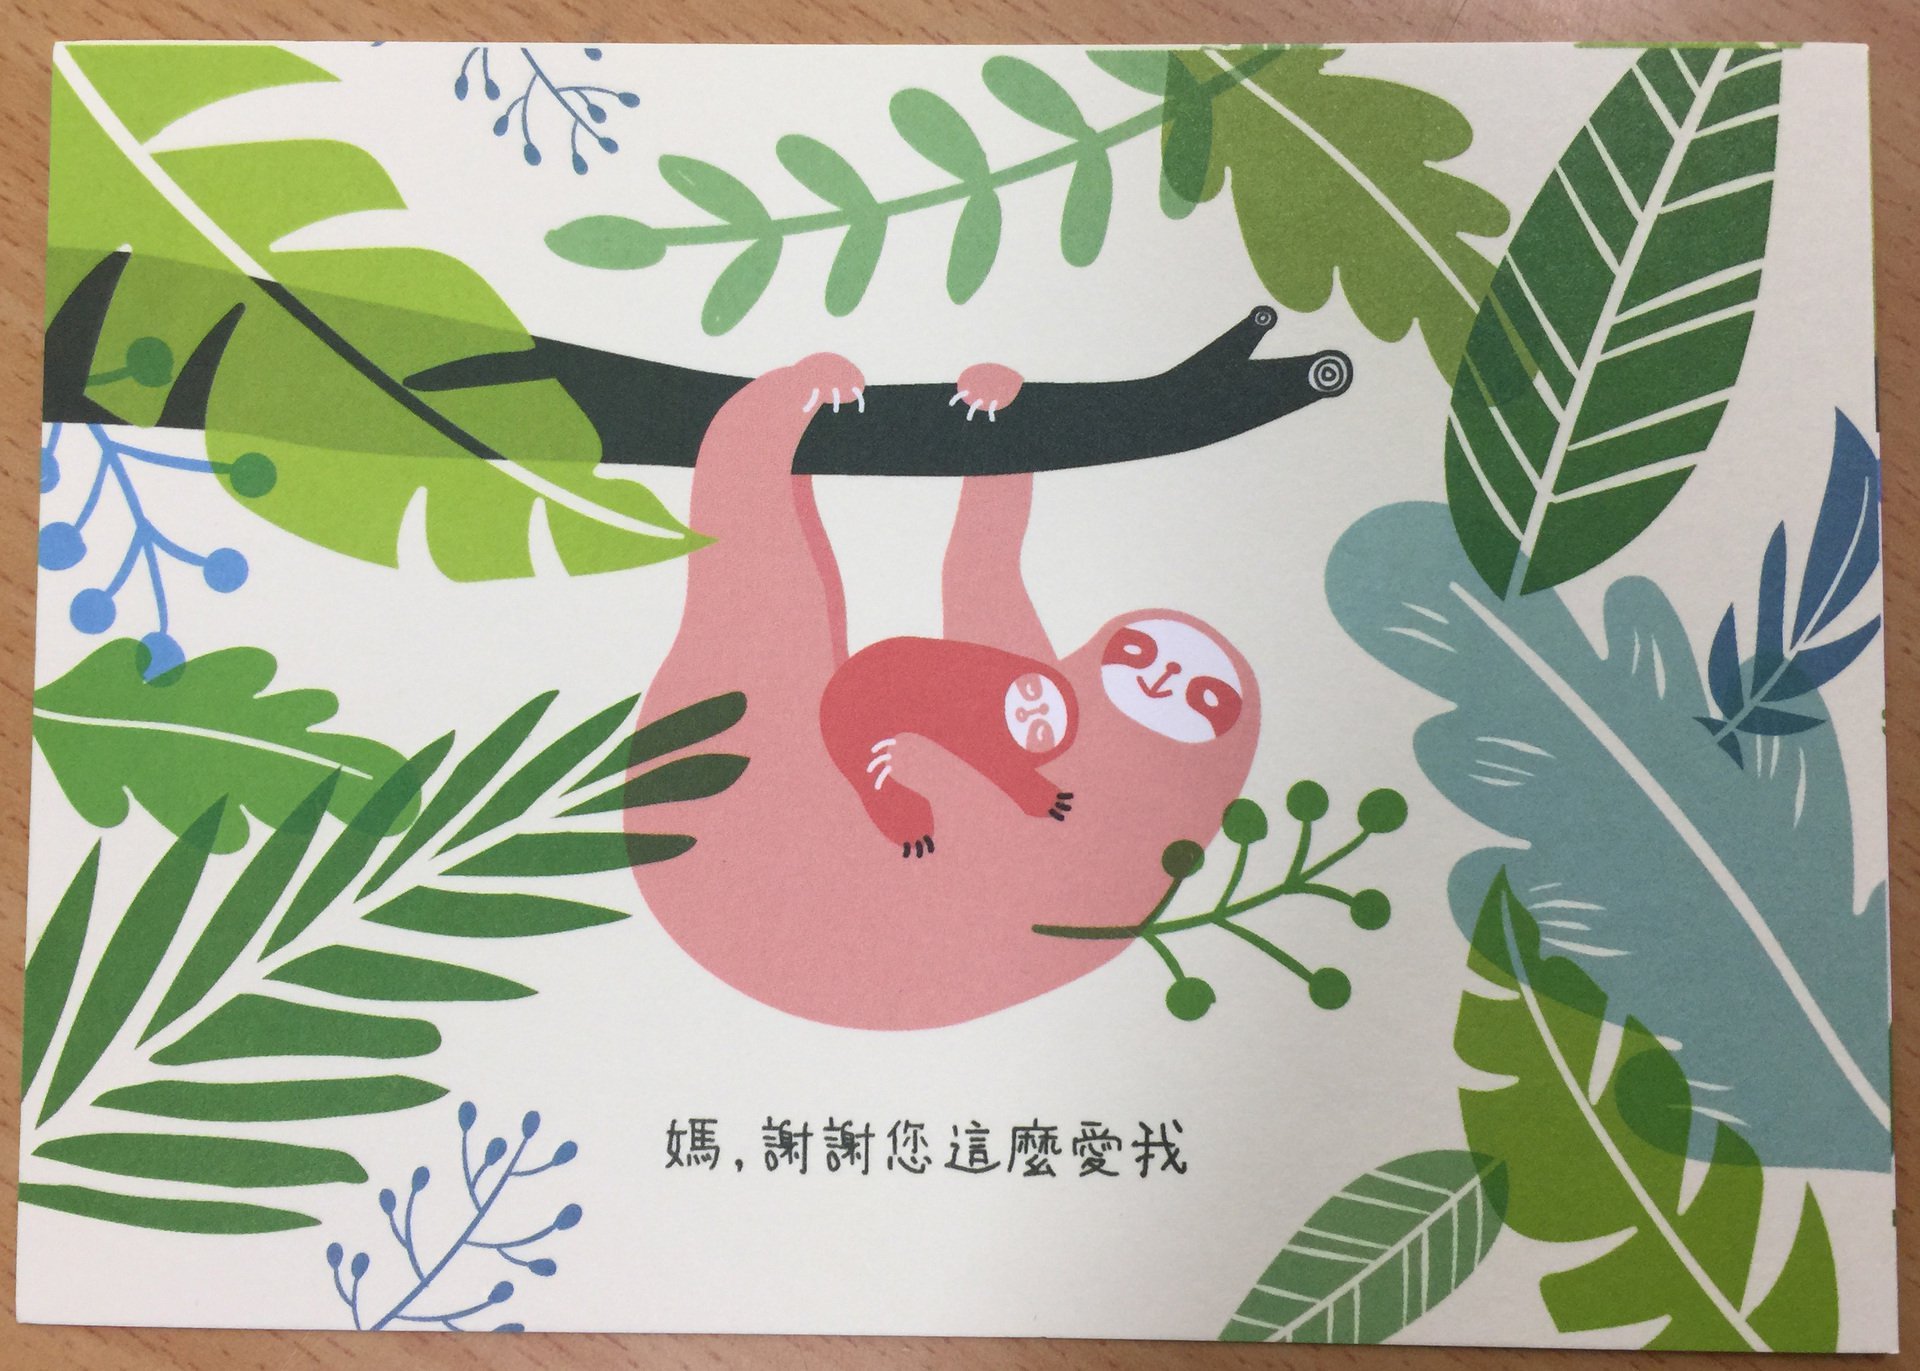 由中華郵政公司免費提供之母親節明信片1